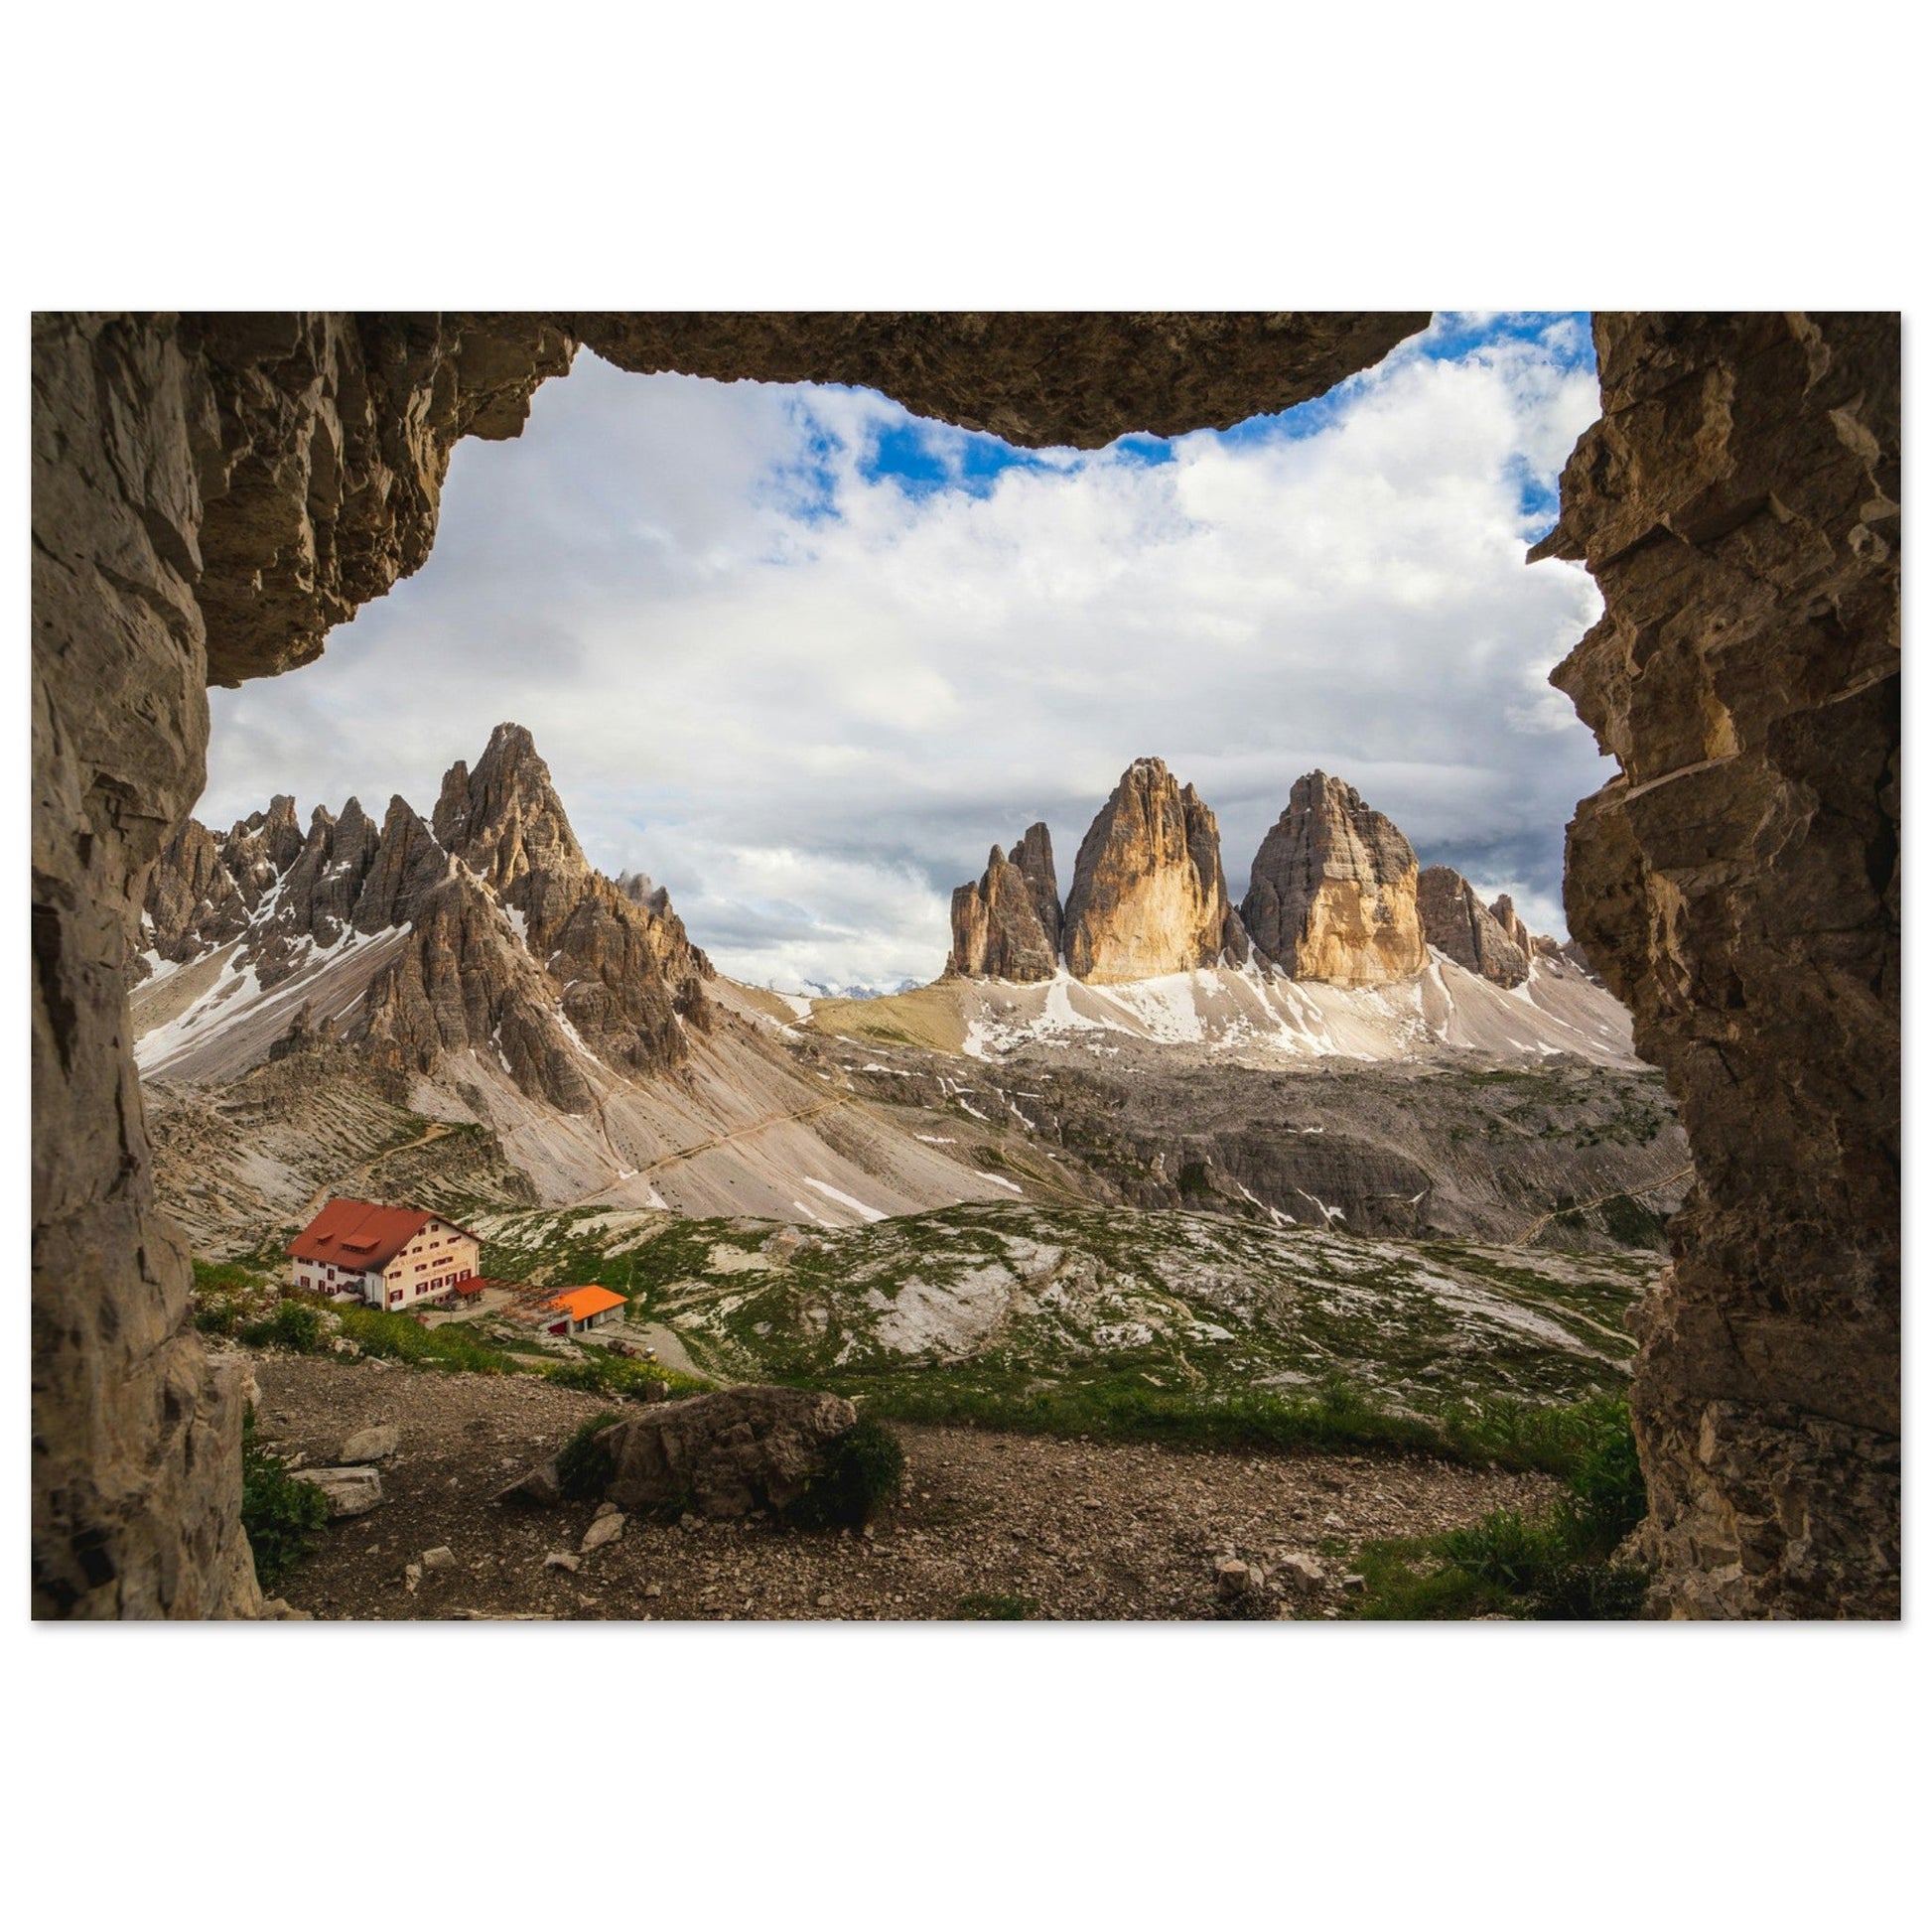 Vente Photo des Tre Cime di Lavaredo, Italie #1 - Tableau photo paysage